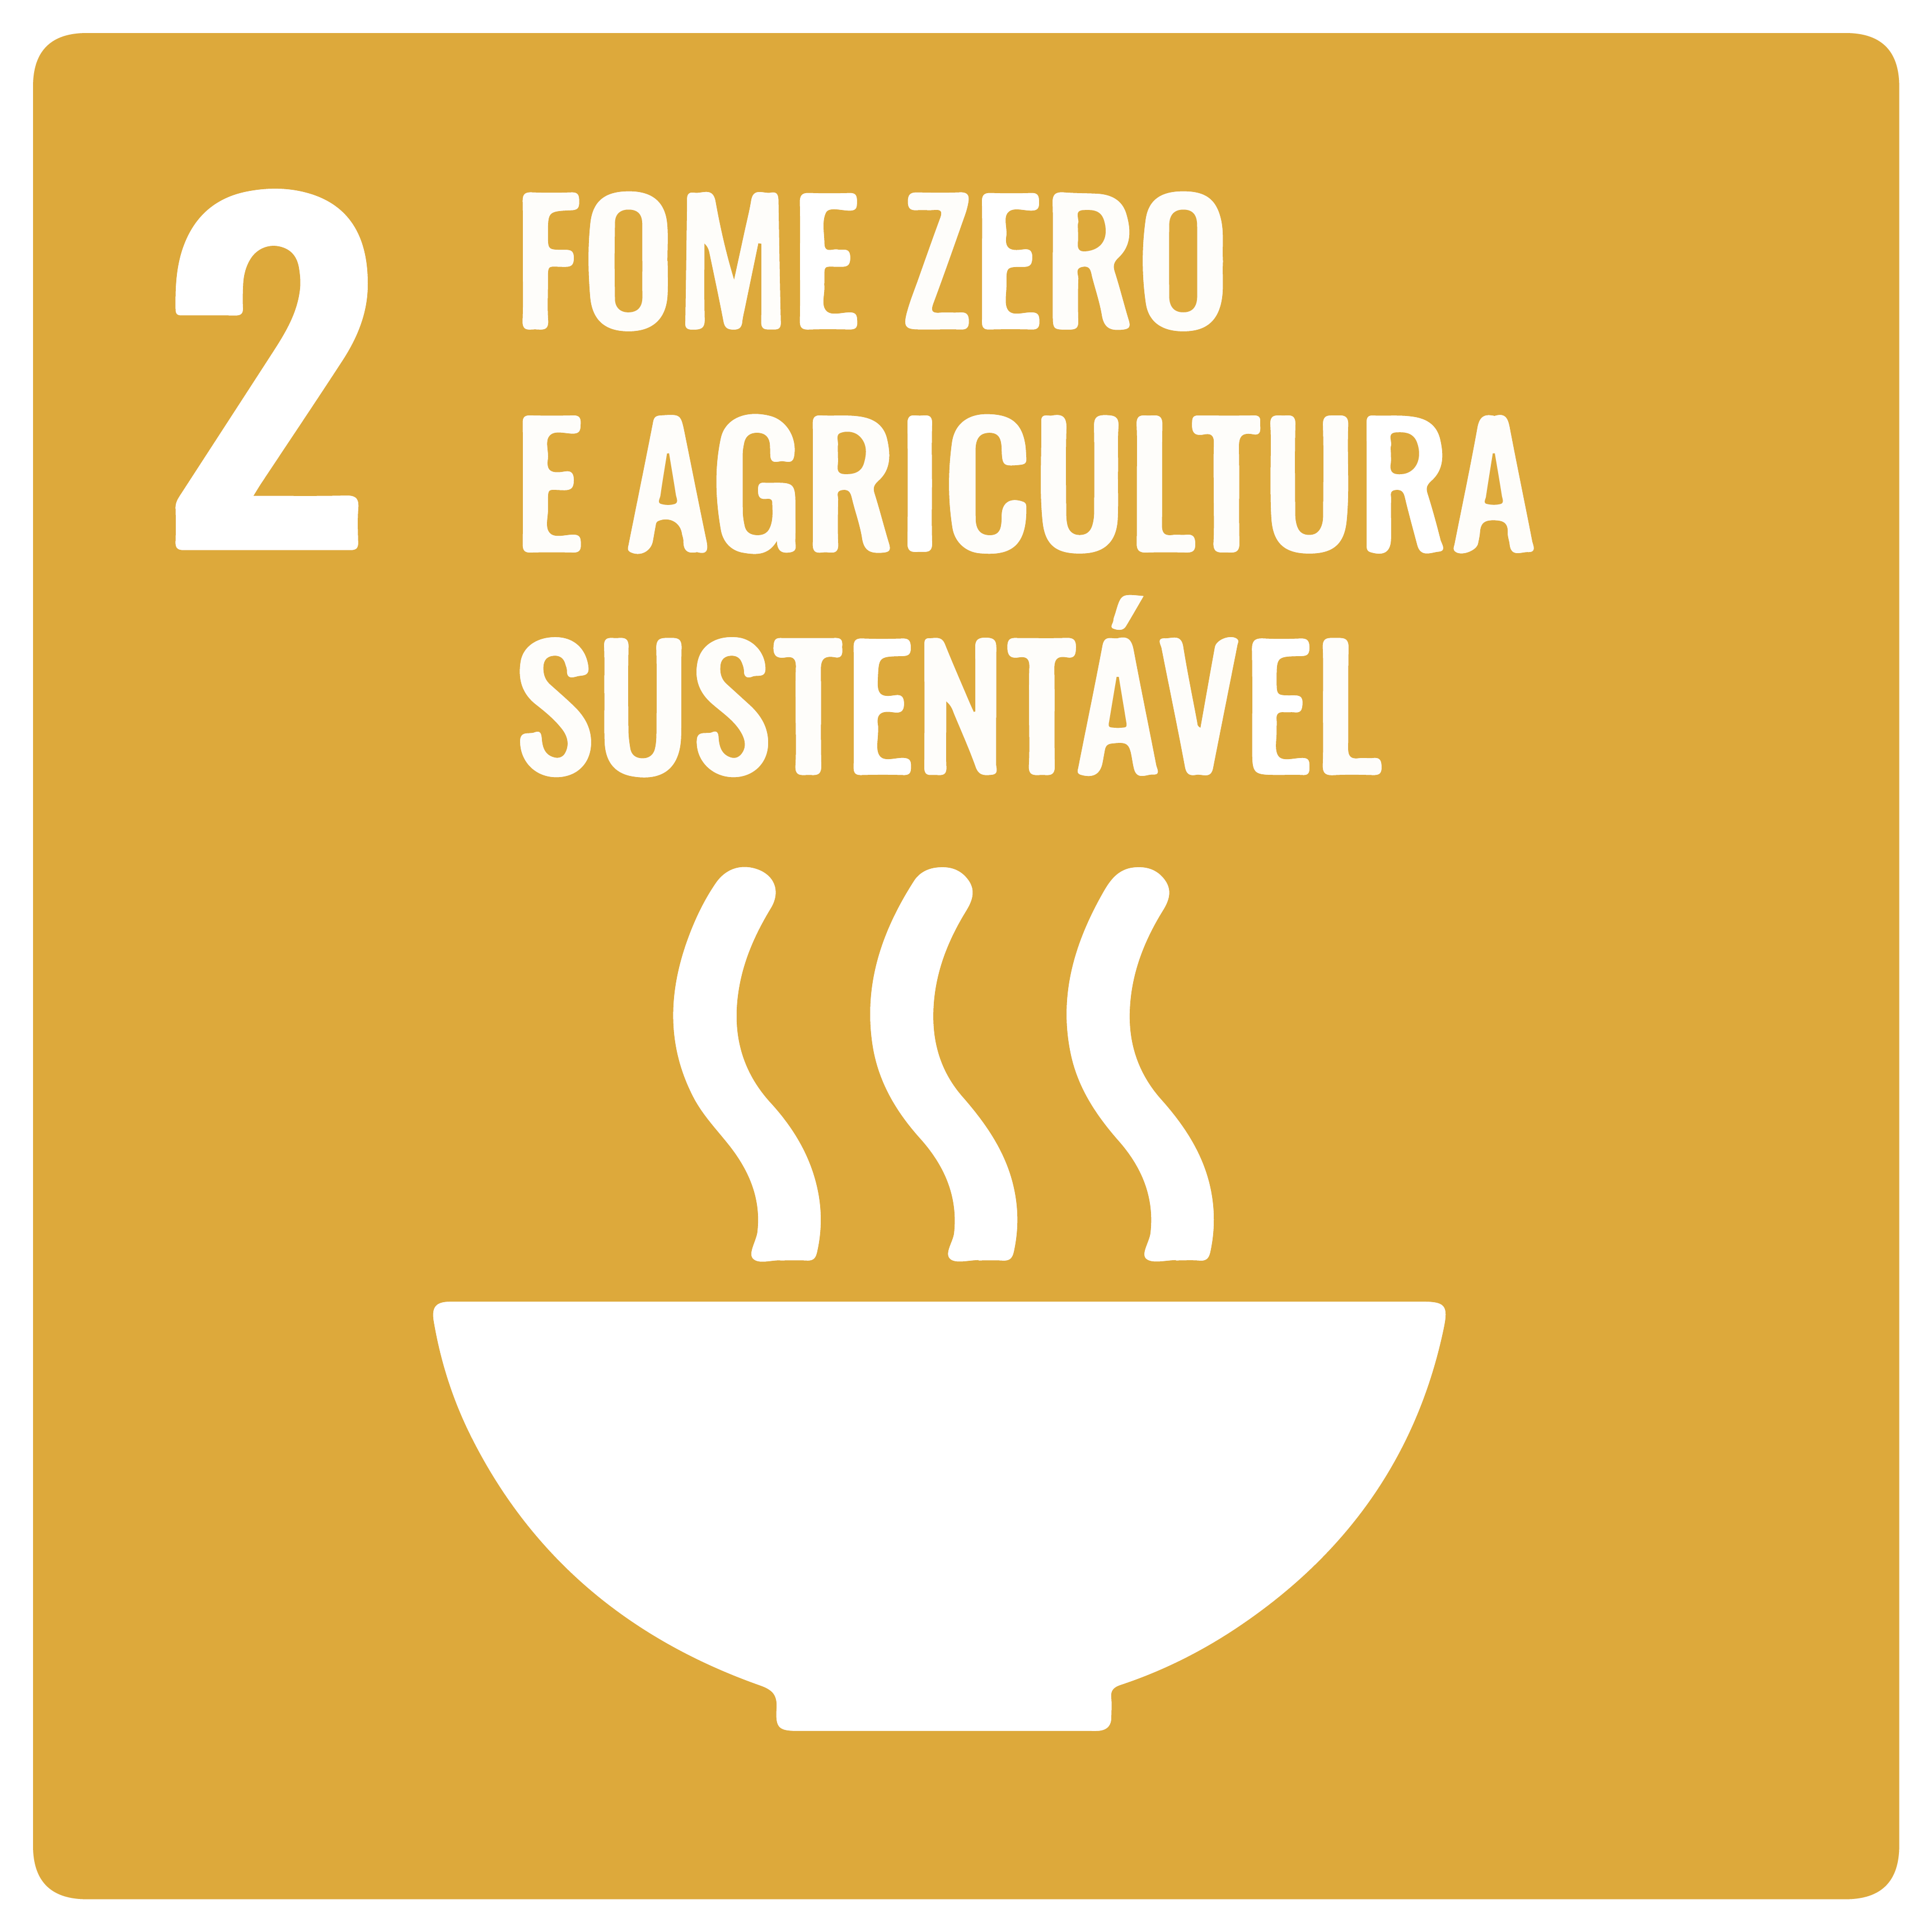 Na imagem, item 2 da ODS: Fome Zero e Agricultura Ssustentável